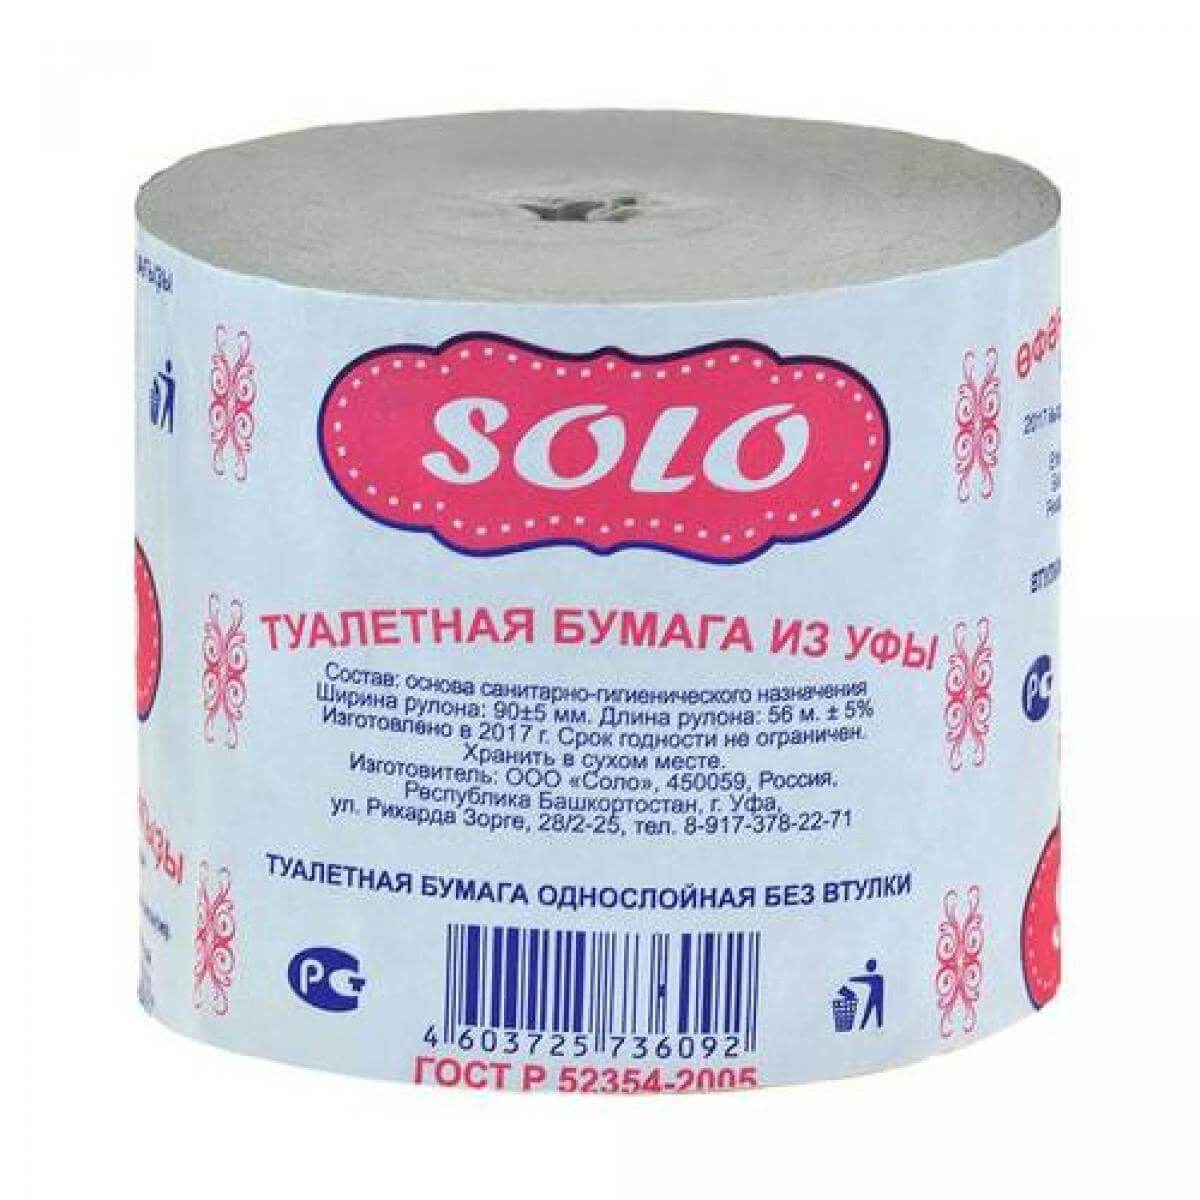 Туал бумага СОЛО 56м/48 шт (Ф*), код: Т4427